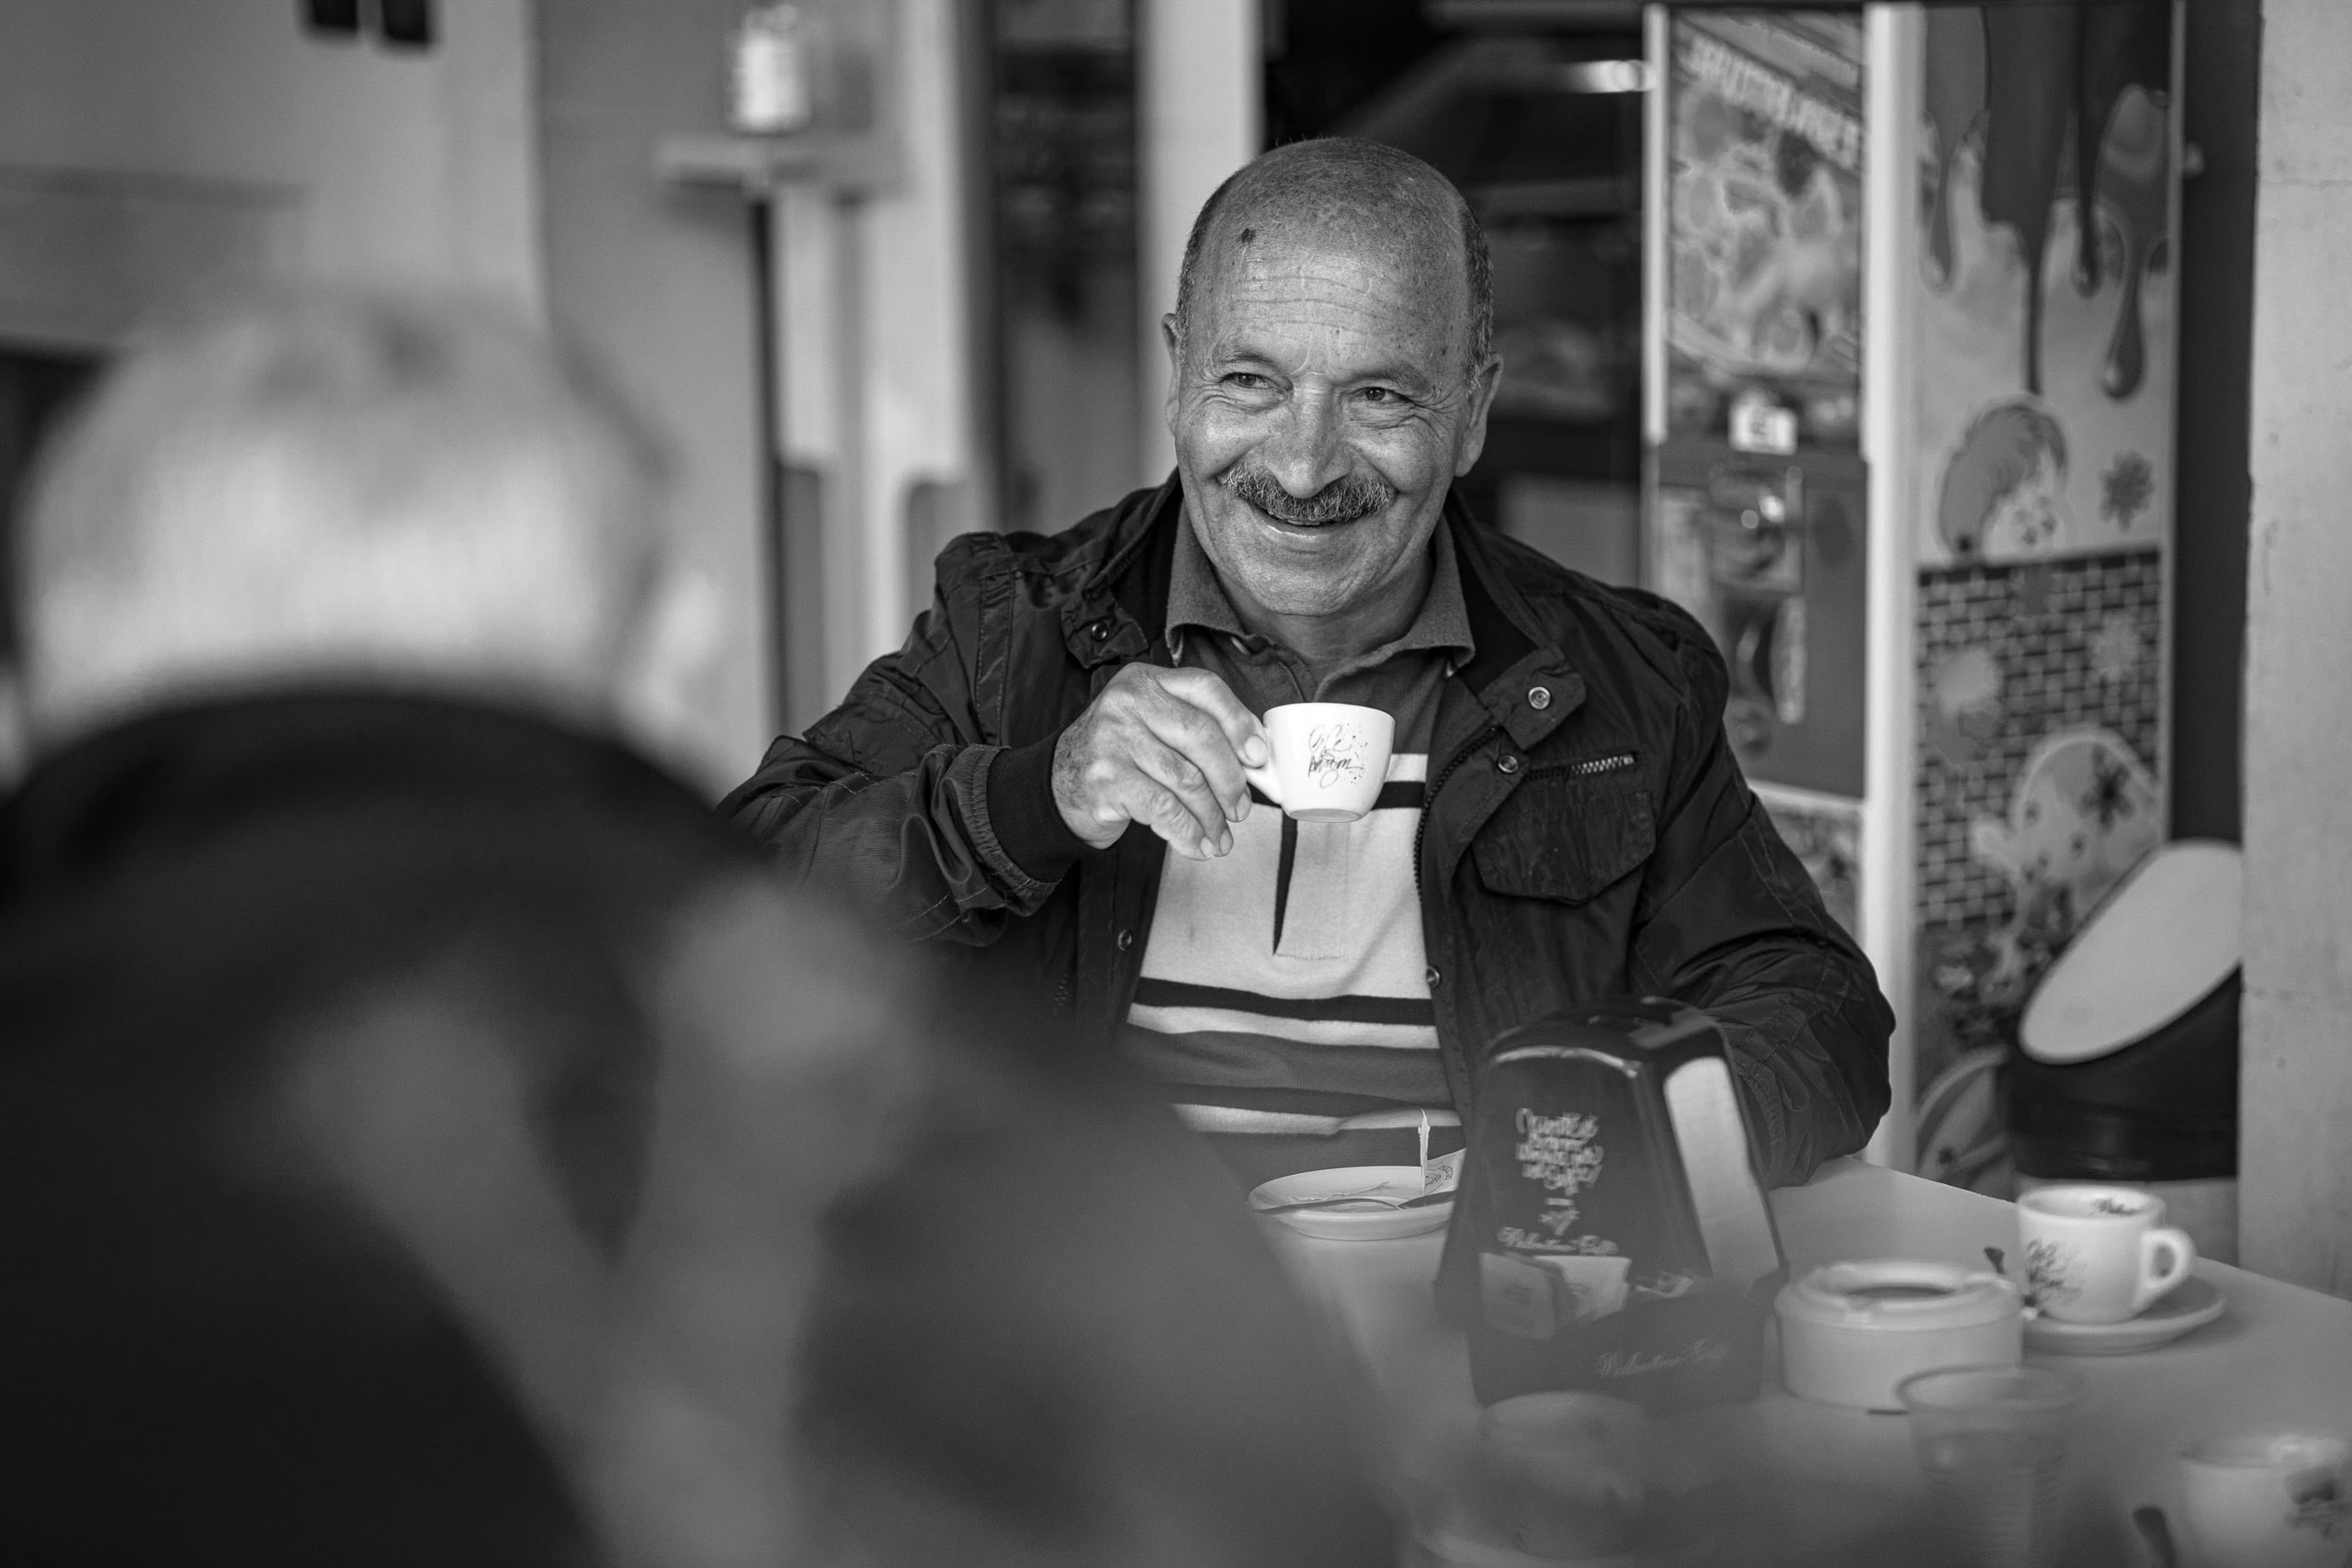 Ein fröhlicher älterer Mann hält in einem Café eine Kaffeetasse und lächelt einer anderen Person am anderen Ende des Tisches herzlich zu. Das Bild ist schwarz-weiß und hebt das Lachen und die entspannte Atmosphäre hervor. © Fotografie Tomas Rodriguez